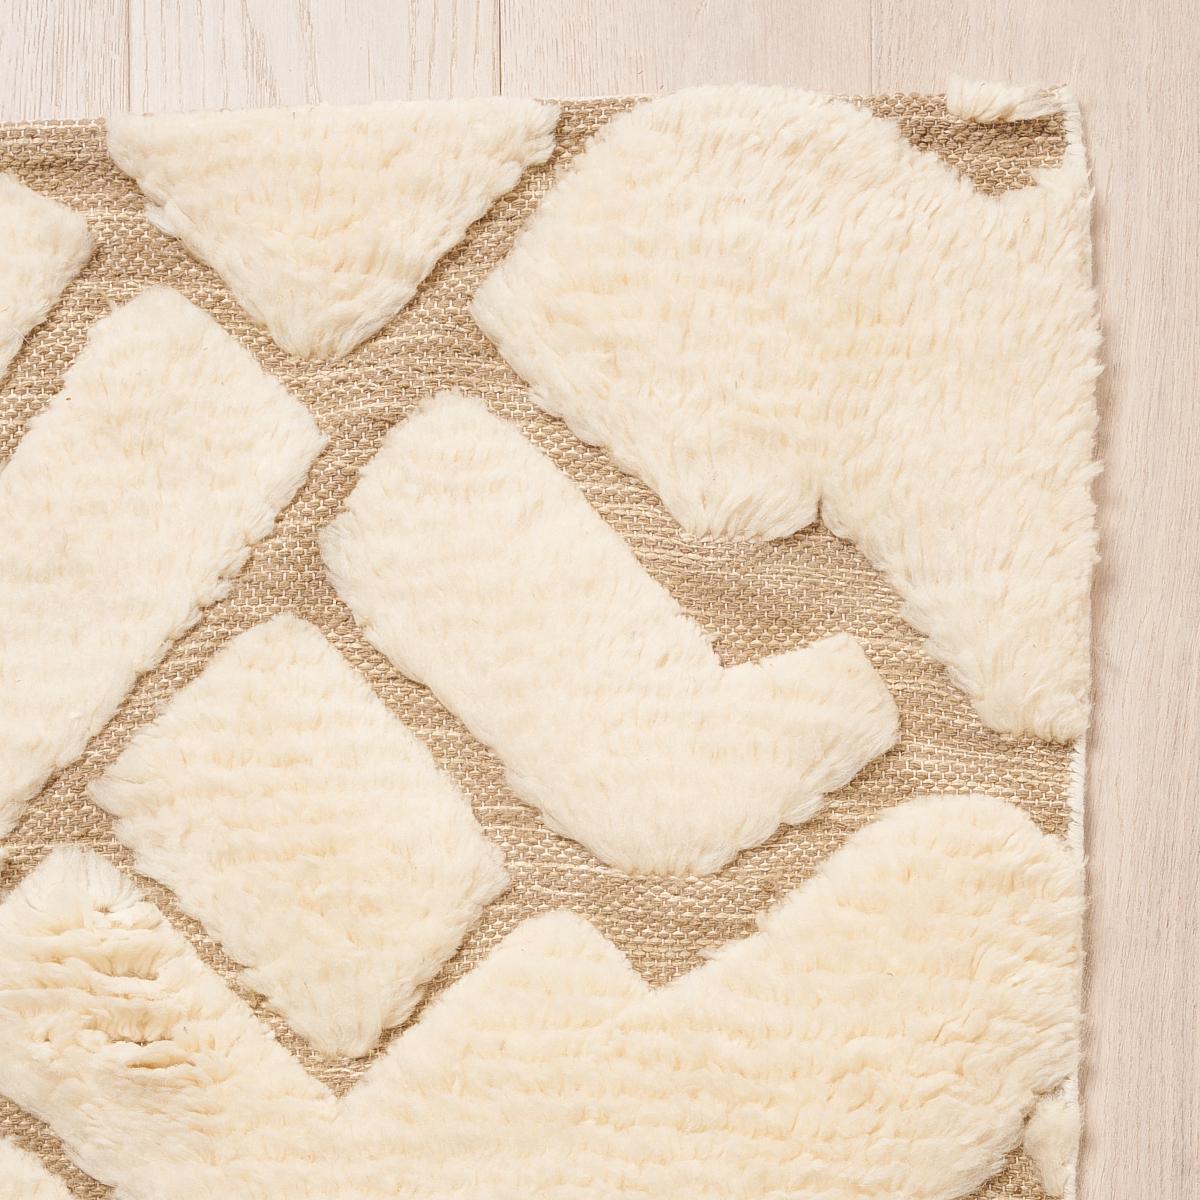 Ce tapis sera expédié en décembre. Un design somptueux fait de fils noués à la main, Zimba est un motif abstrait à grande échelle avec une texture prononcée et séduisante. Inspiré par l'un de nos motifs de tissus et de papiers peints les plus